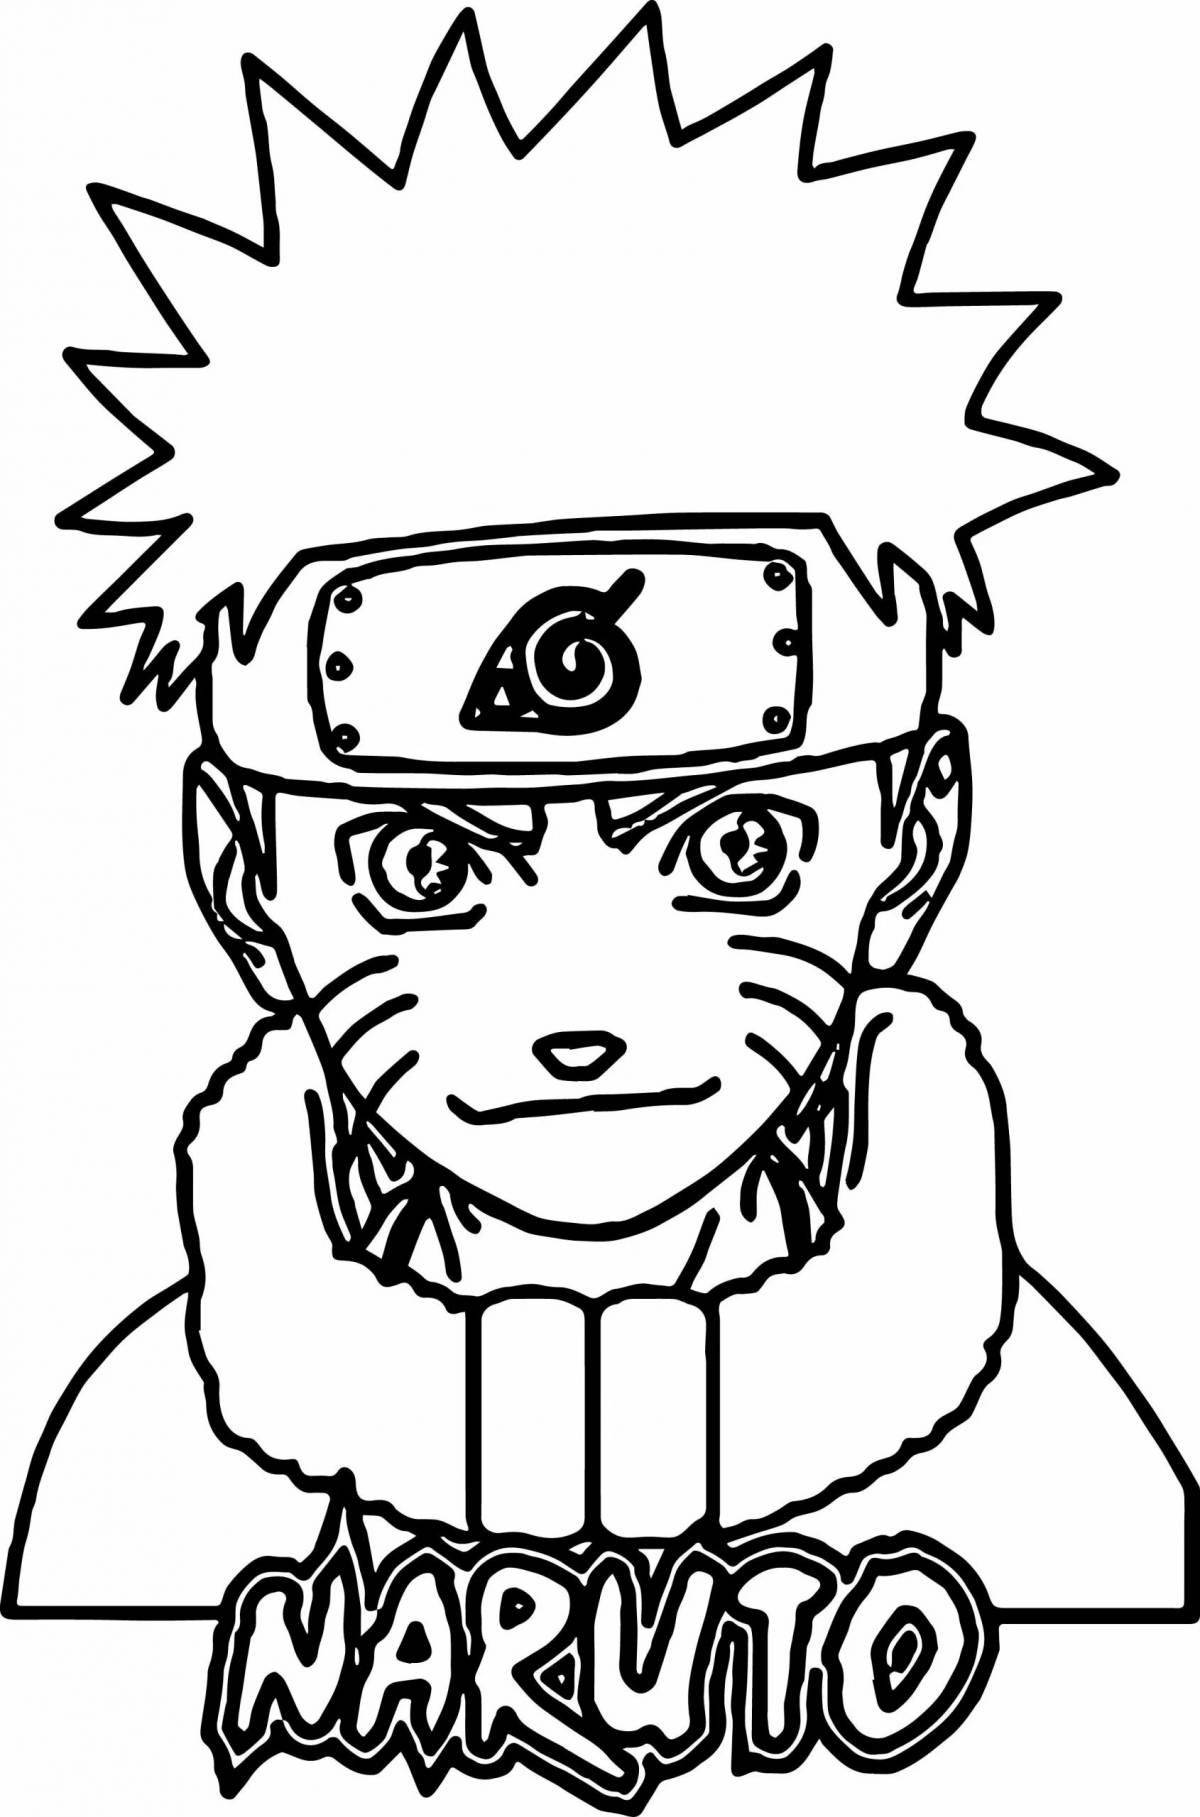 Naruto seal #1